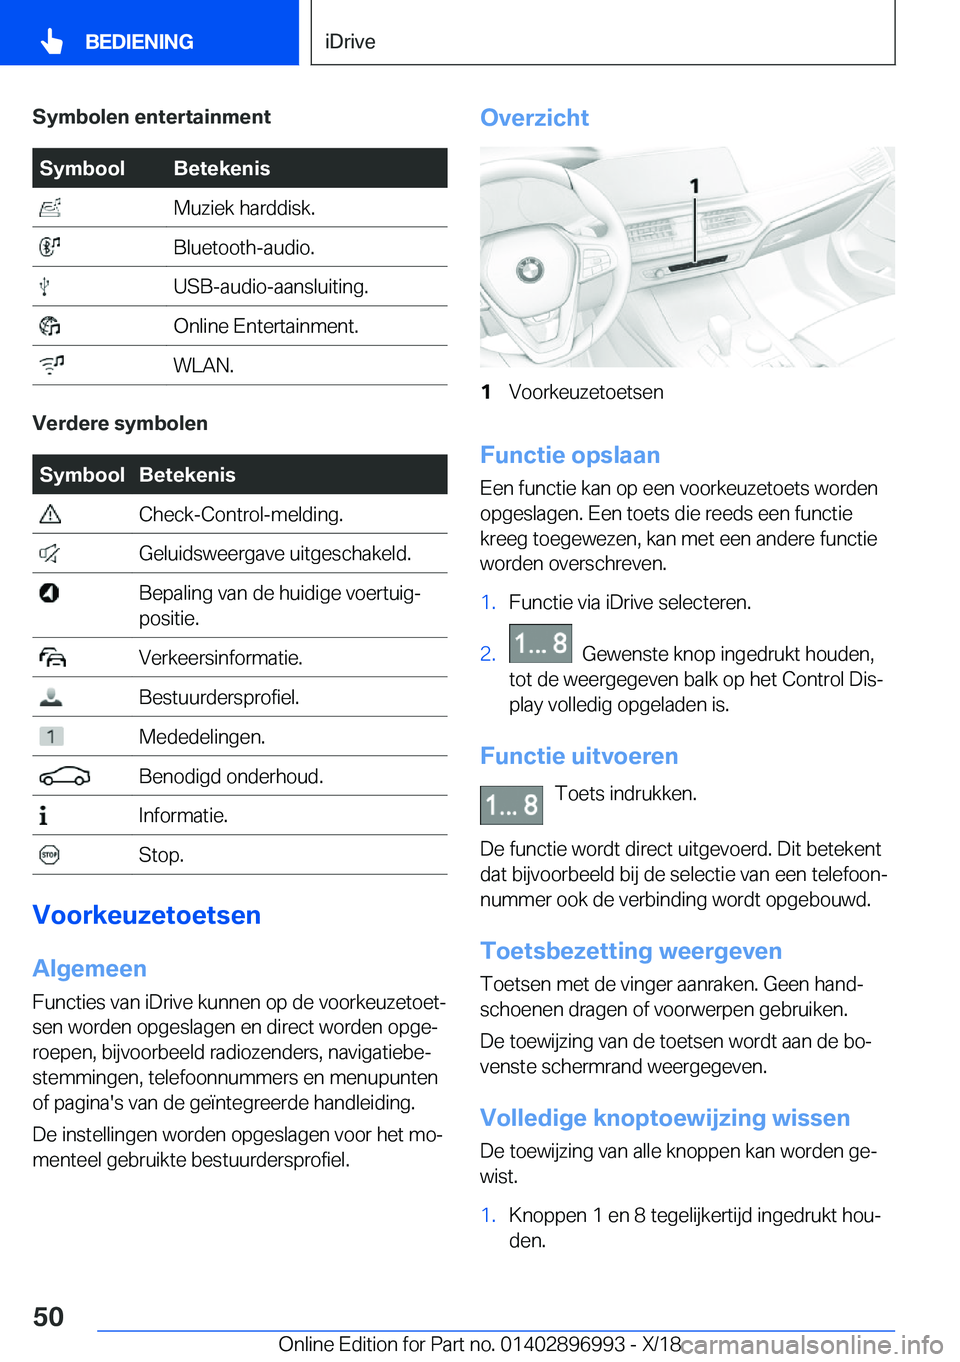 BMW Z4 2019  Instructieboekjes (in Dutch) �S�y�m�b�o�l�e�n��e�n�t�e�r�t�a�i�n�m�e�n�t�S�y�m�b�o�o�l�B�e�t�e�k�e�n�i�s��M�u�z�i�e�k��h�a�r�d�d�i�s�k�.��B�l�u�e�t�o�o�t�h�-�a�u�d�i�o�.��U�S�B�-�a�u�d�i�o�-�a�a�n�s�l�u�i�t�i�n�g�.��O�n�l�i